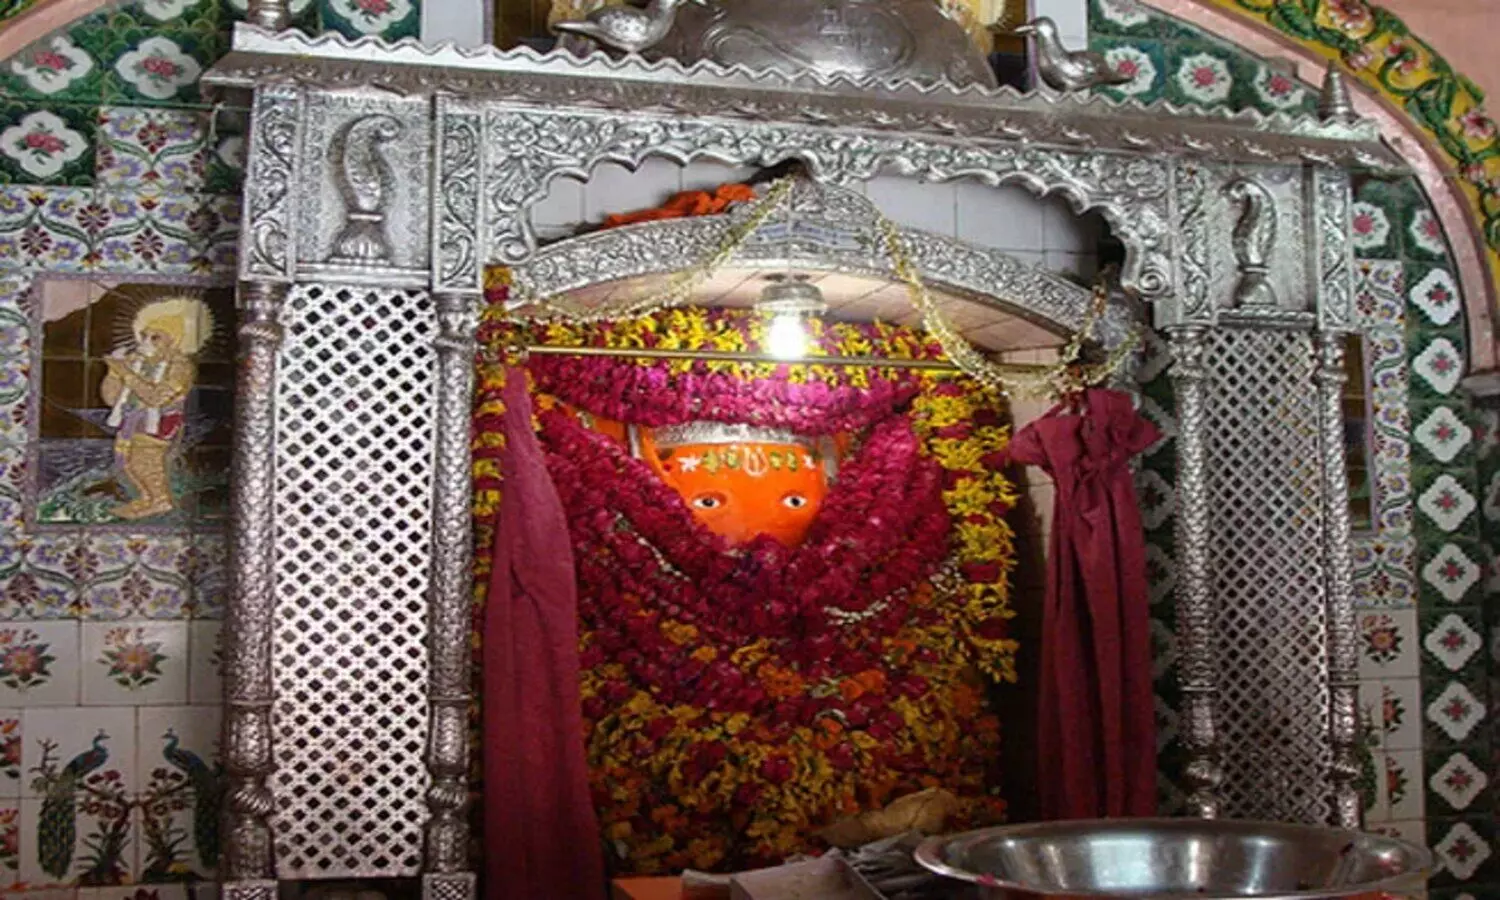 Hanuman Setu Temple in Lucknow